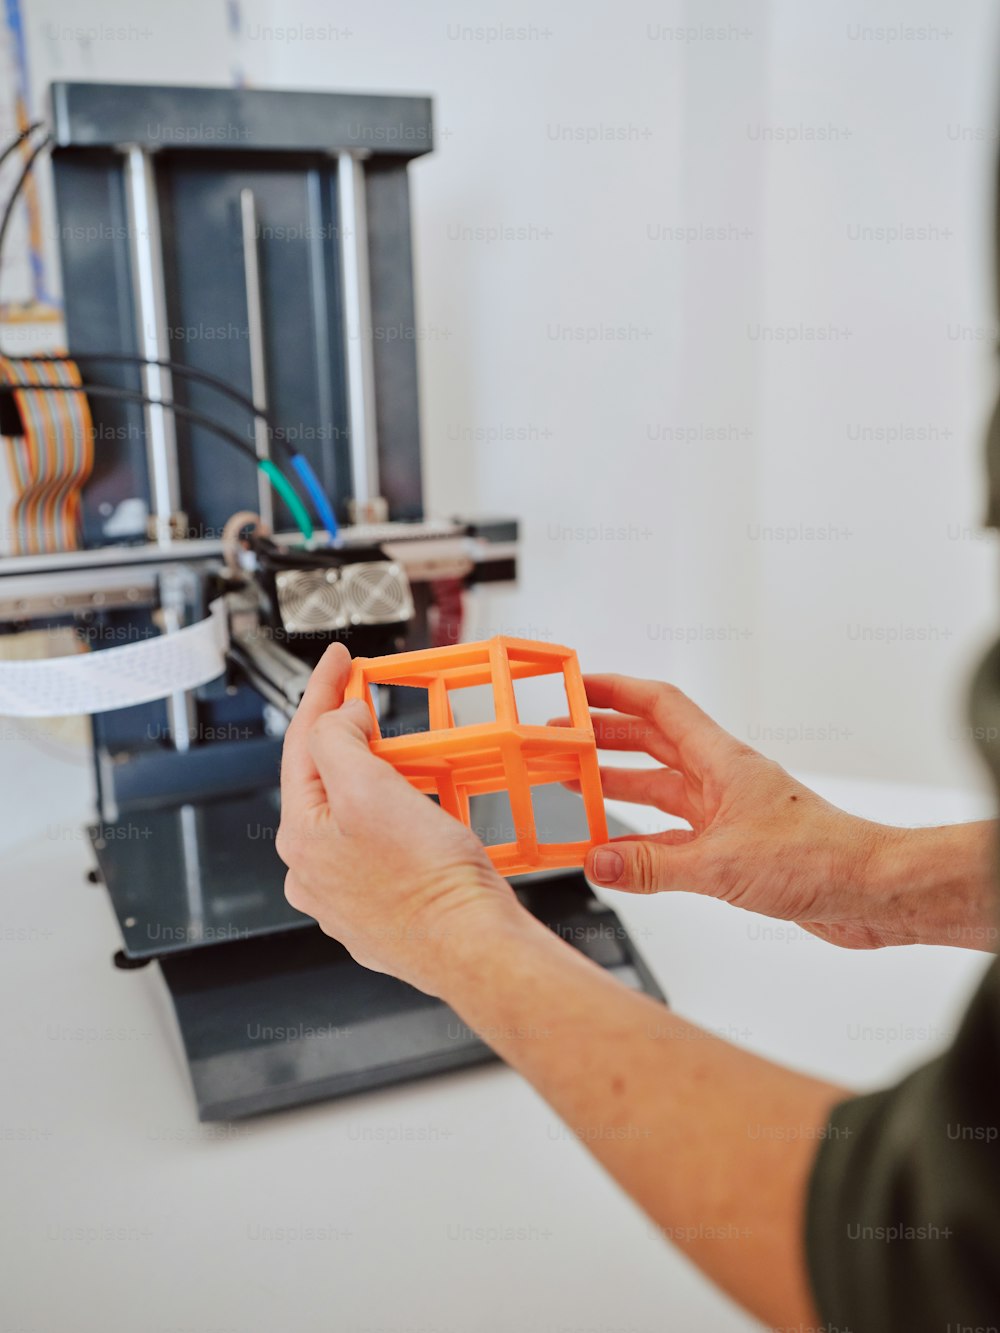 Una persona está trabajando en una impresora 3D